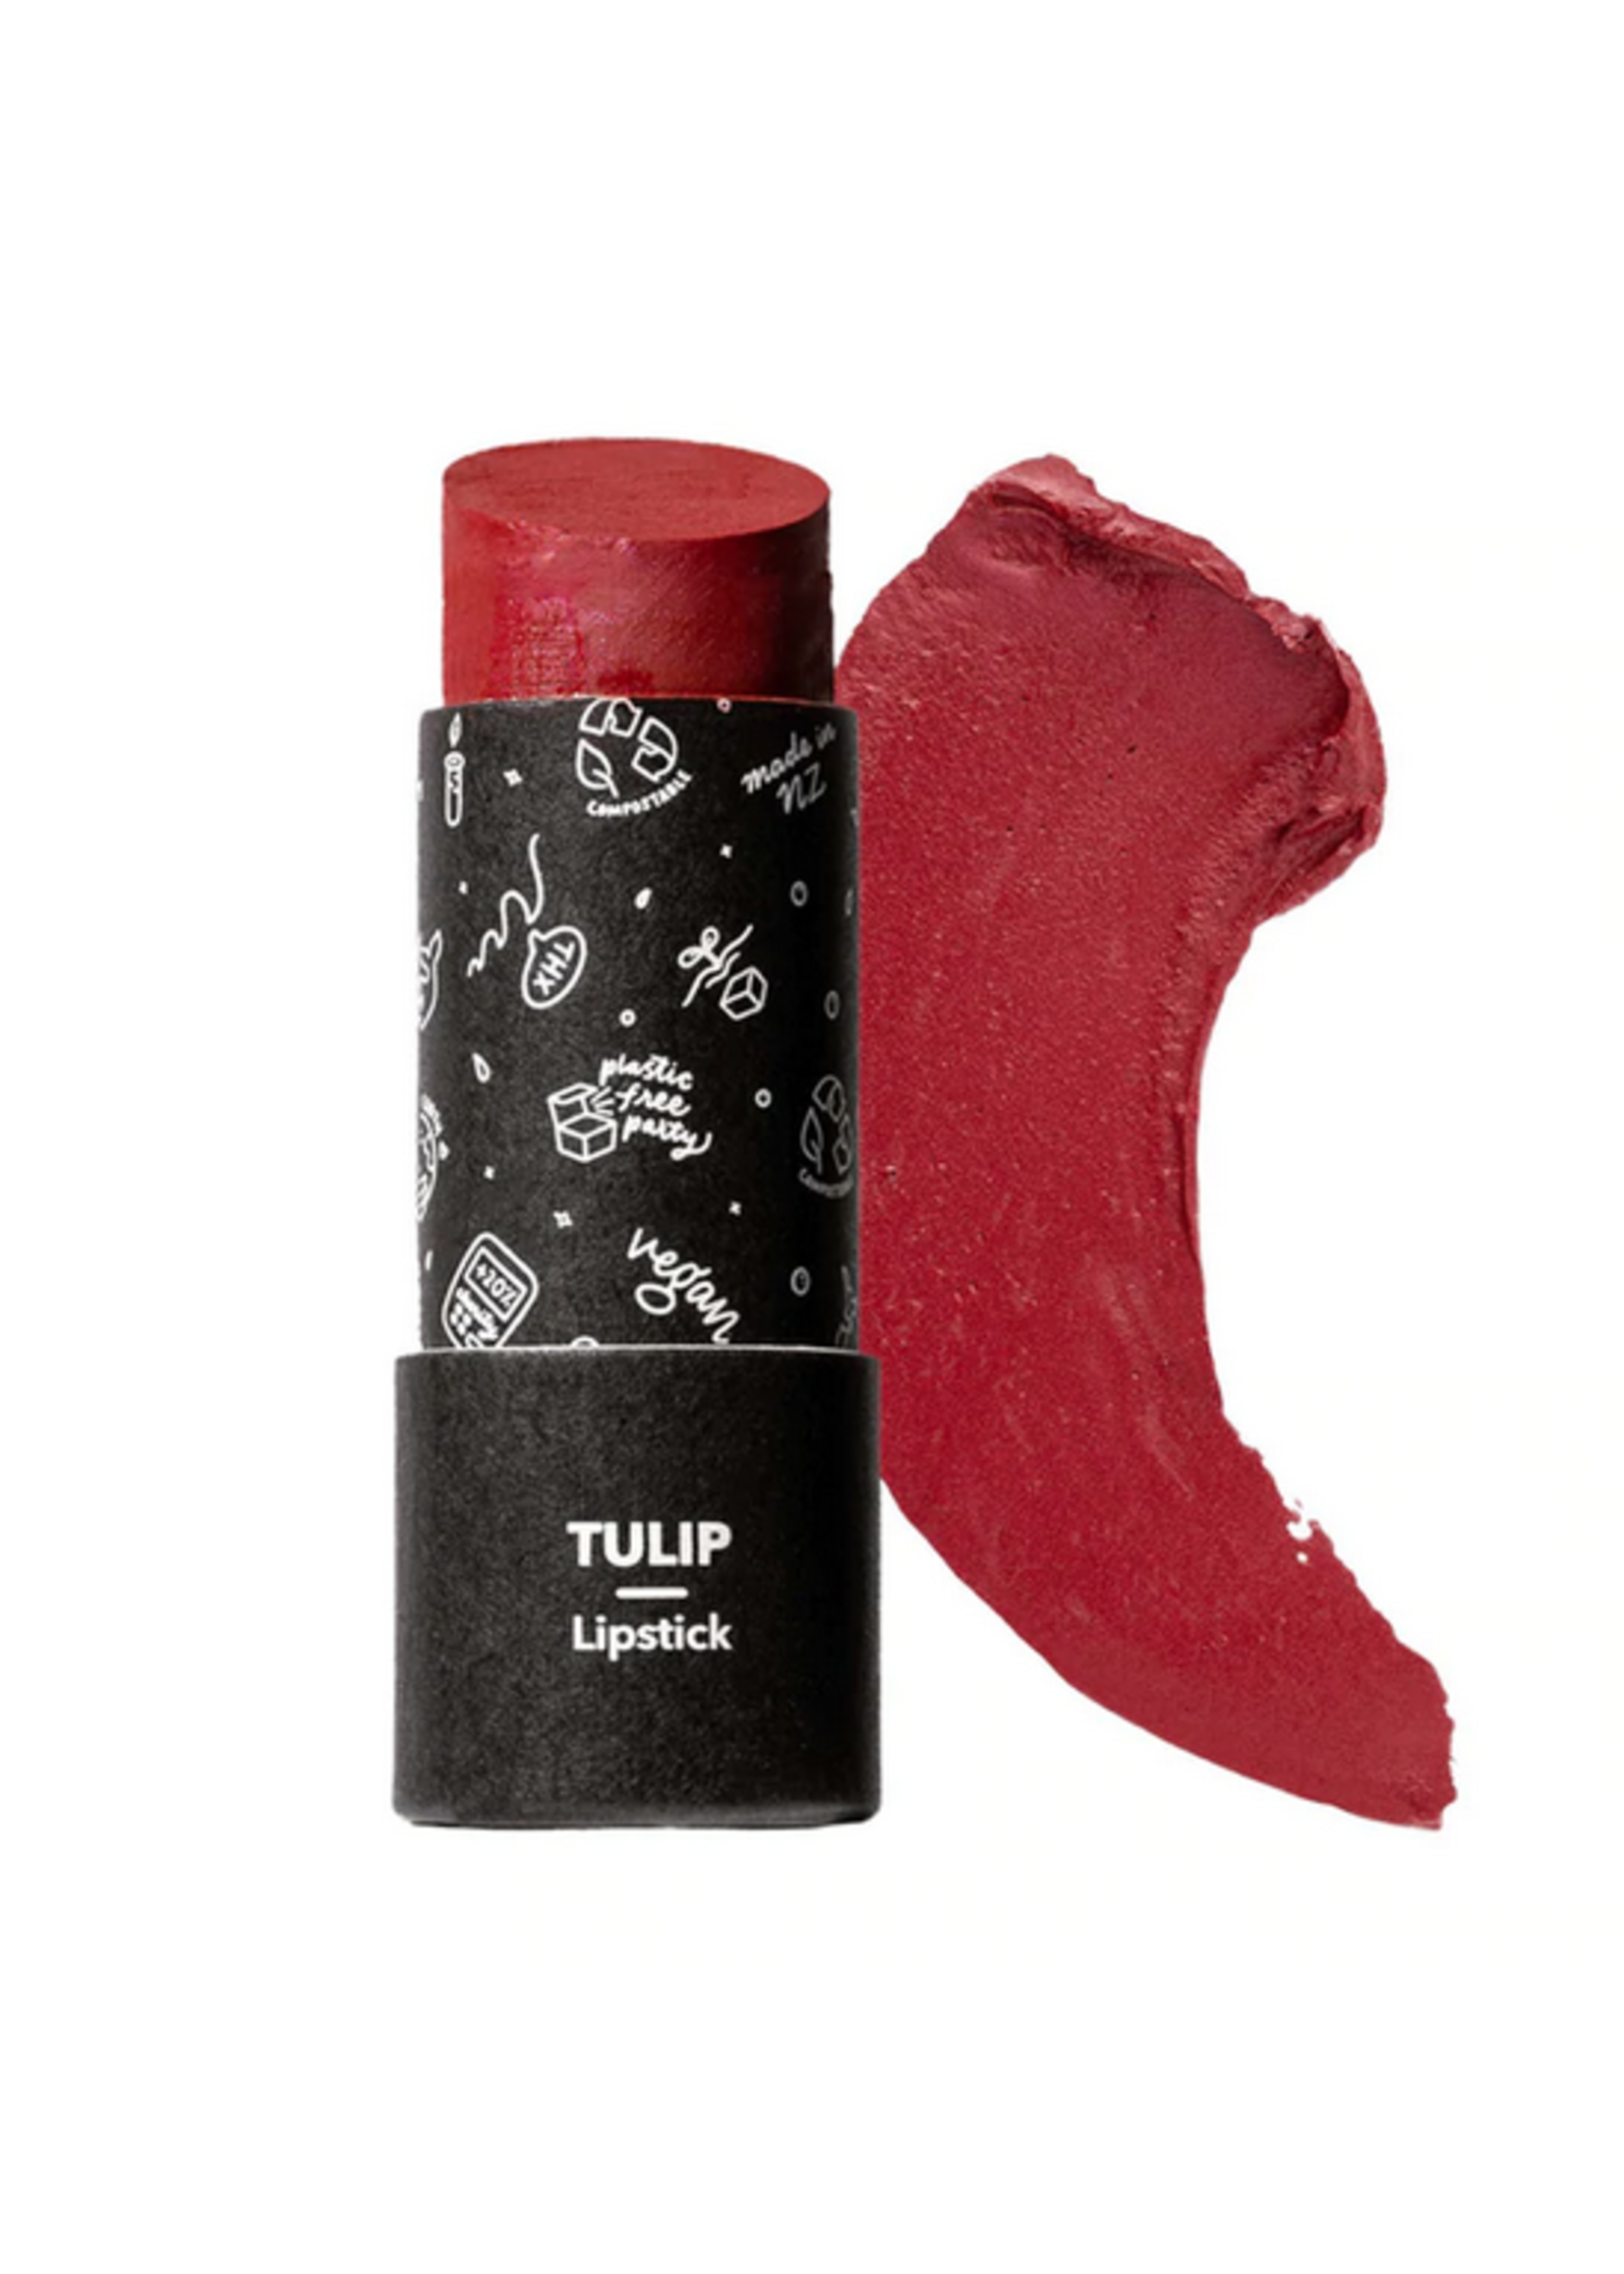 Ethique Ethique Lipstick Tulip Deep Berry 8g